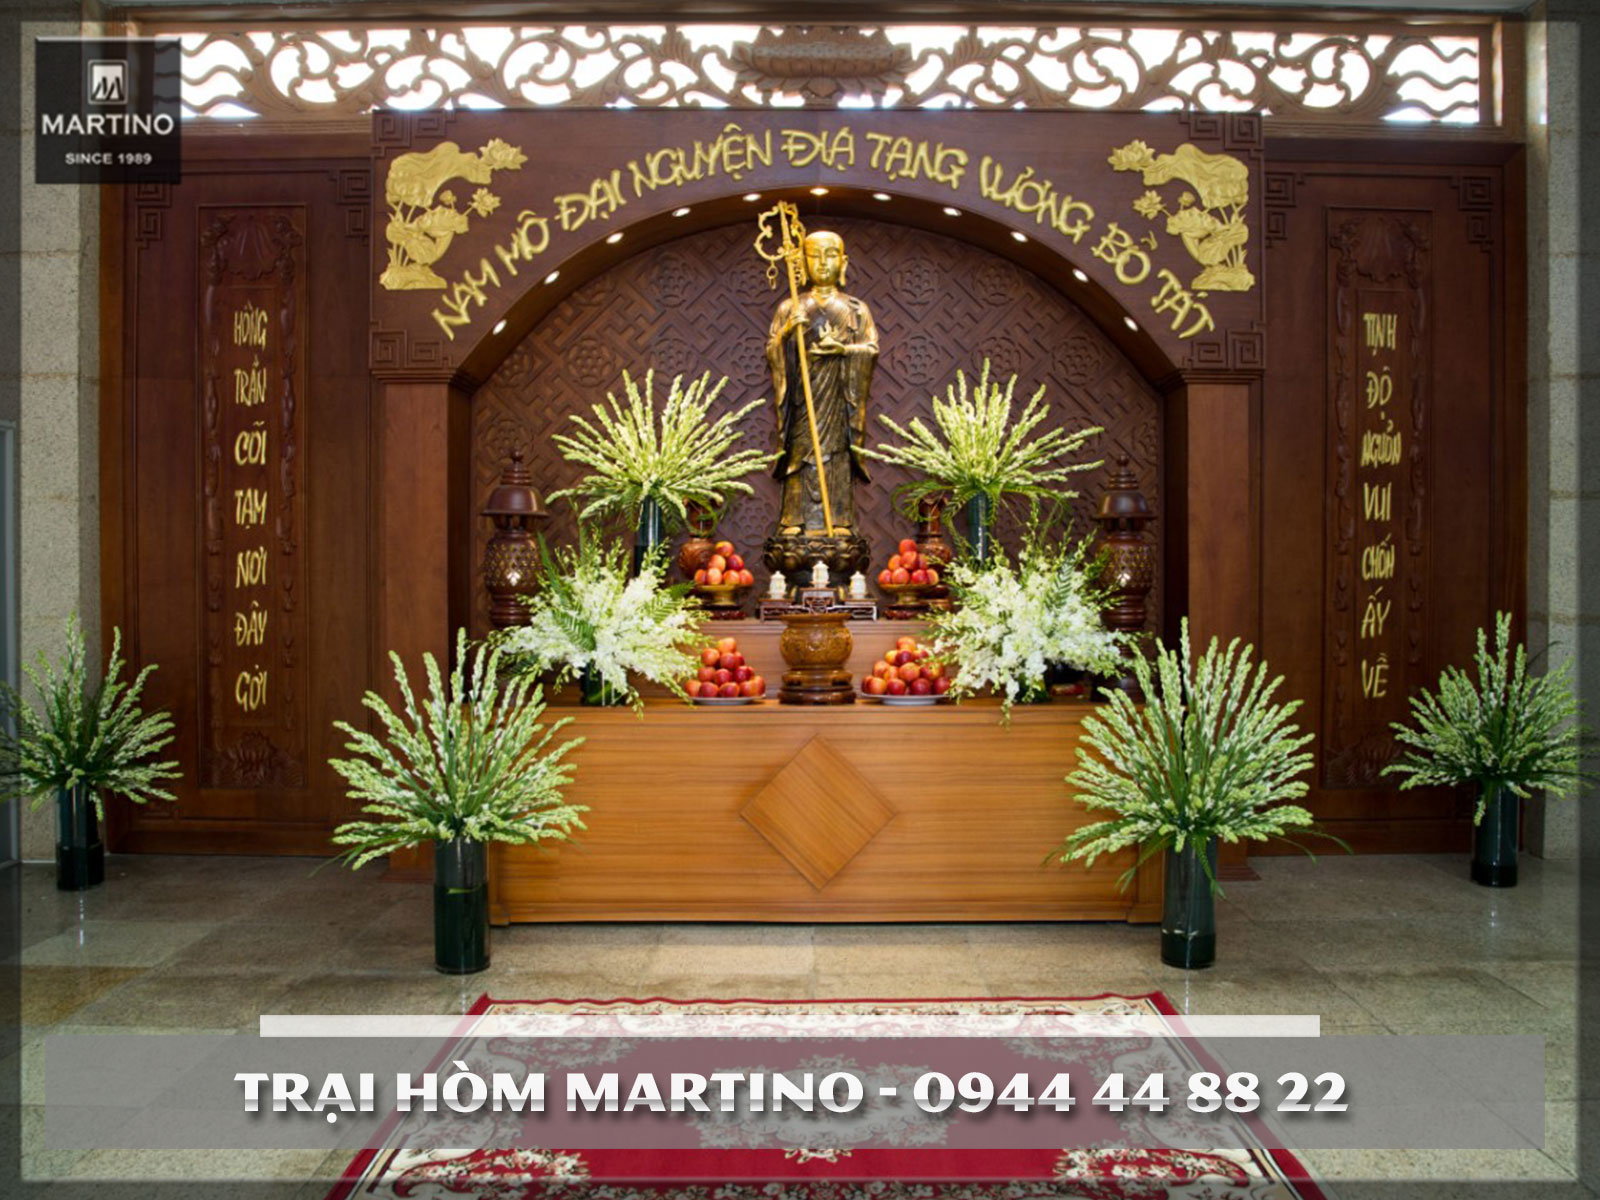 Trại hòm Martino - Dịch vụ tang lễ cao cấp tại Việt Nam